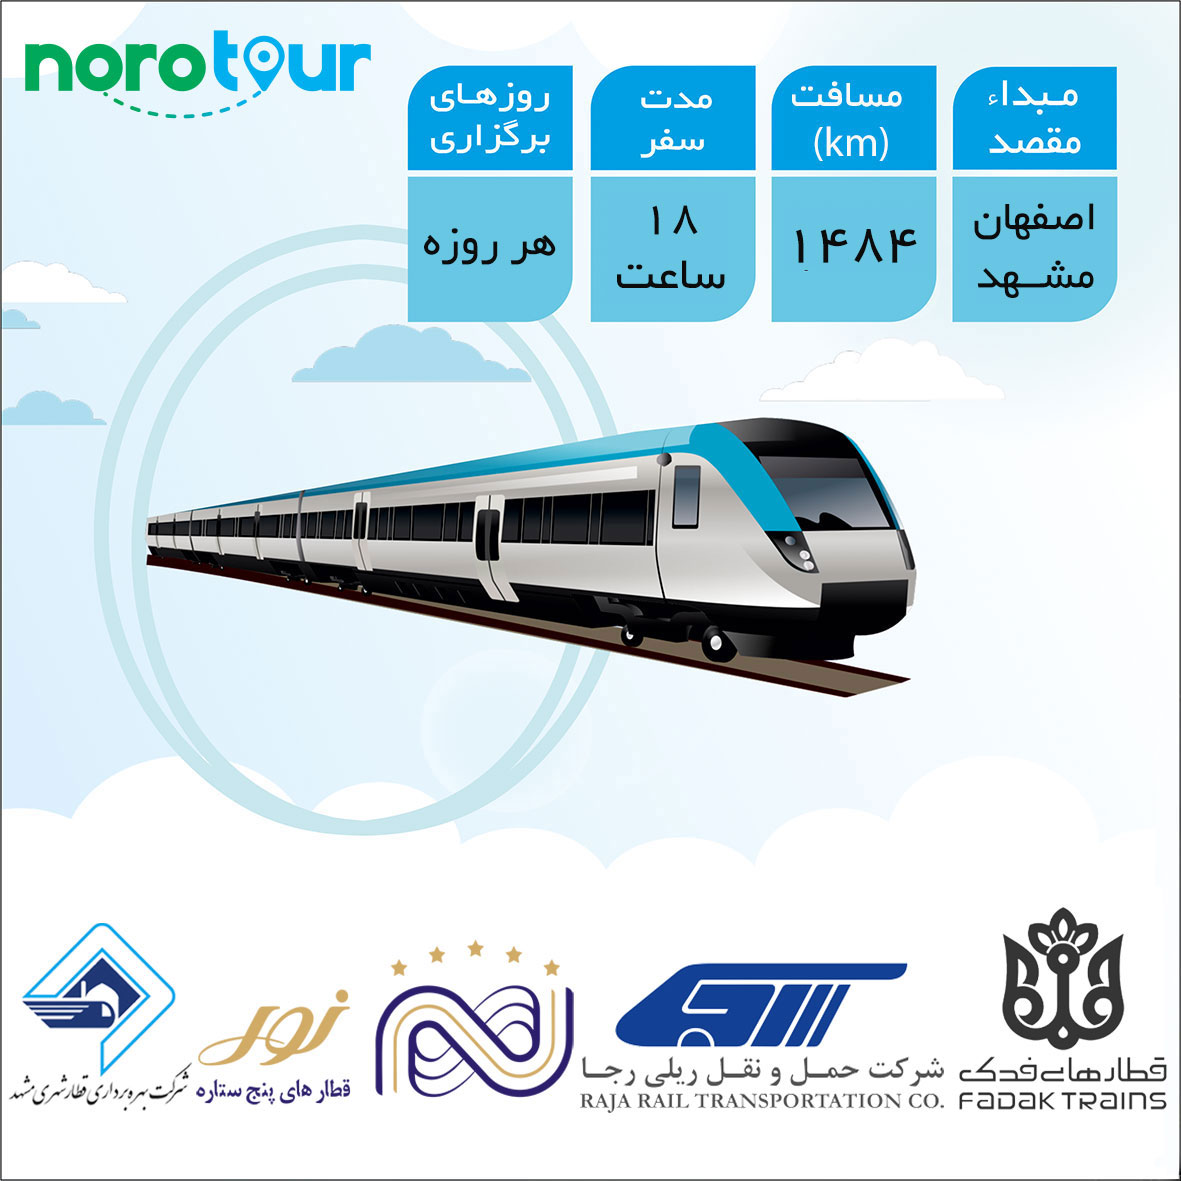 تور مشهد از اصفهان با قطار | نورو تور